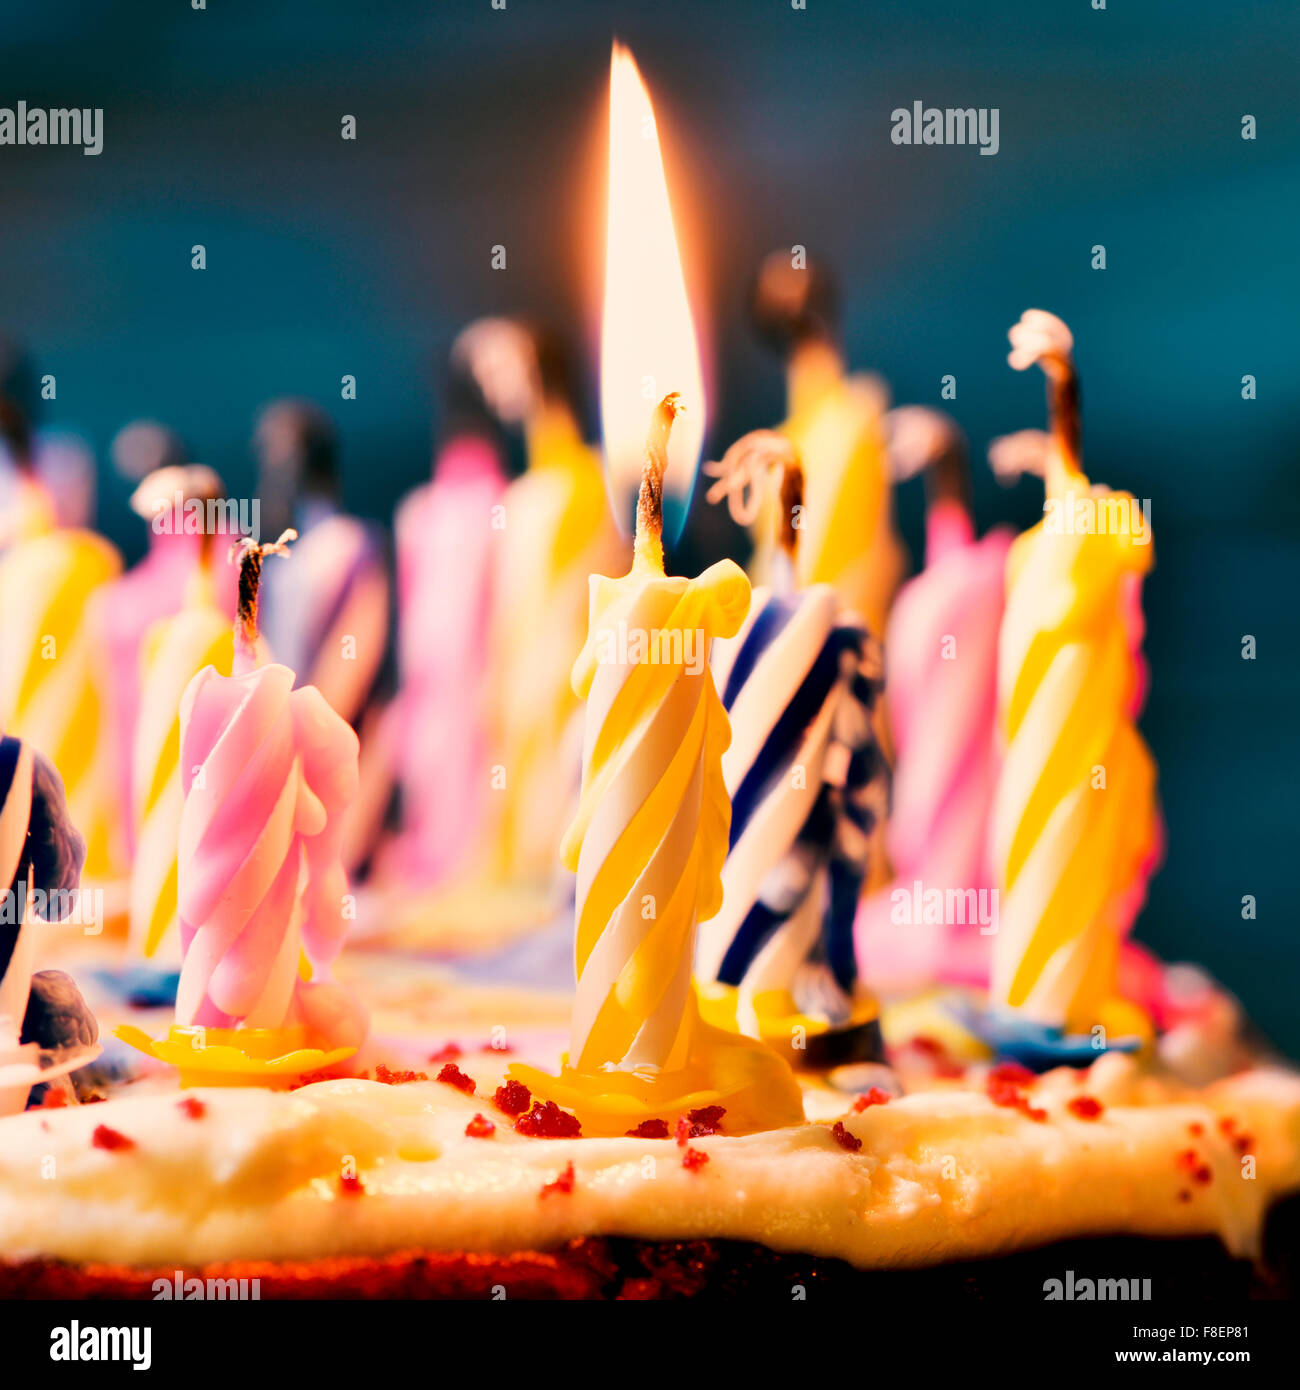 Nahaufnahme von einigen unbeleuchtet Kerzen und nur eine brennende Kerze  nach dem Ausblasen des Kuchens, gefiltert Stockfotografie - Alamy